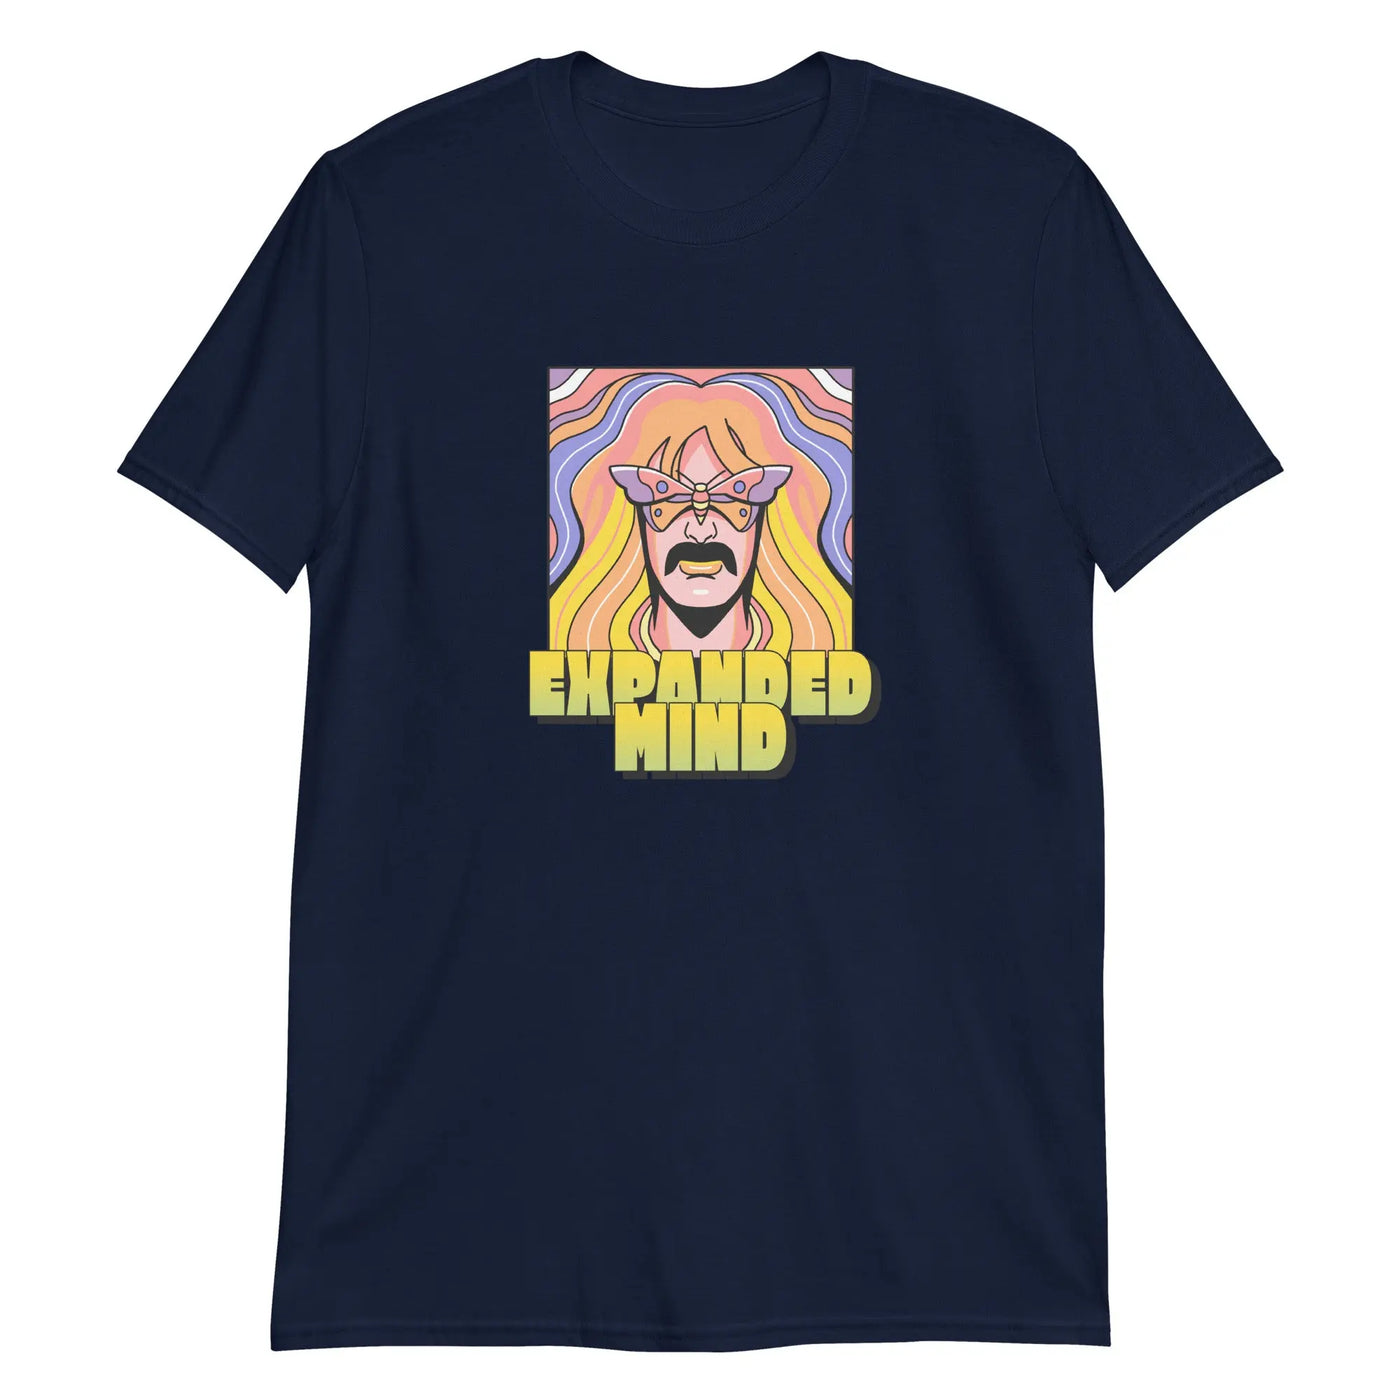 Expanded Mind Unisex T-Shirt CRZYTEE